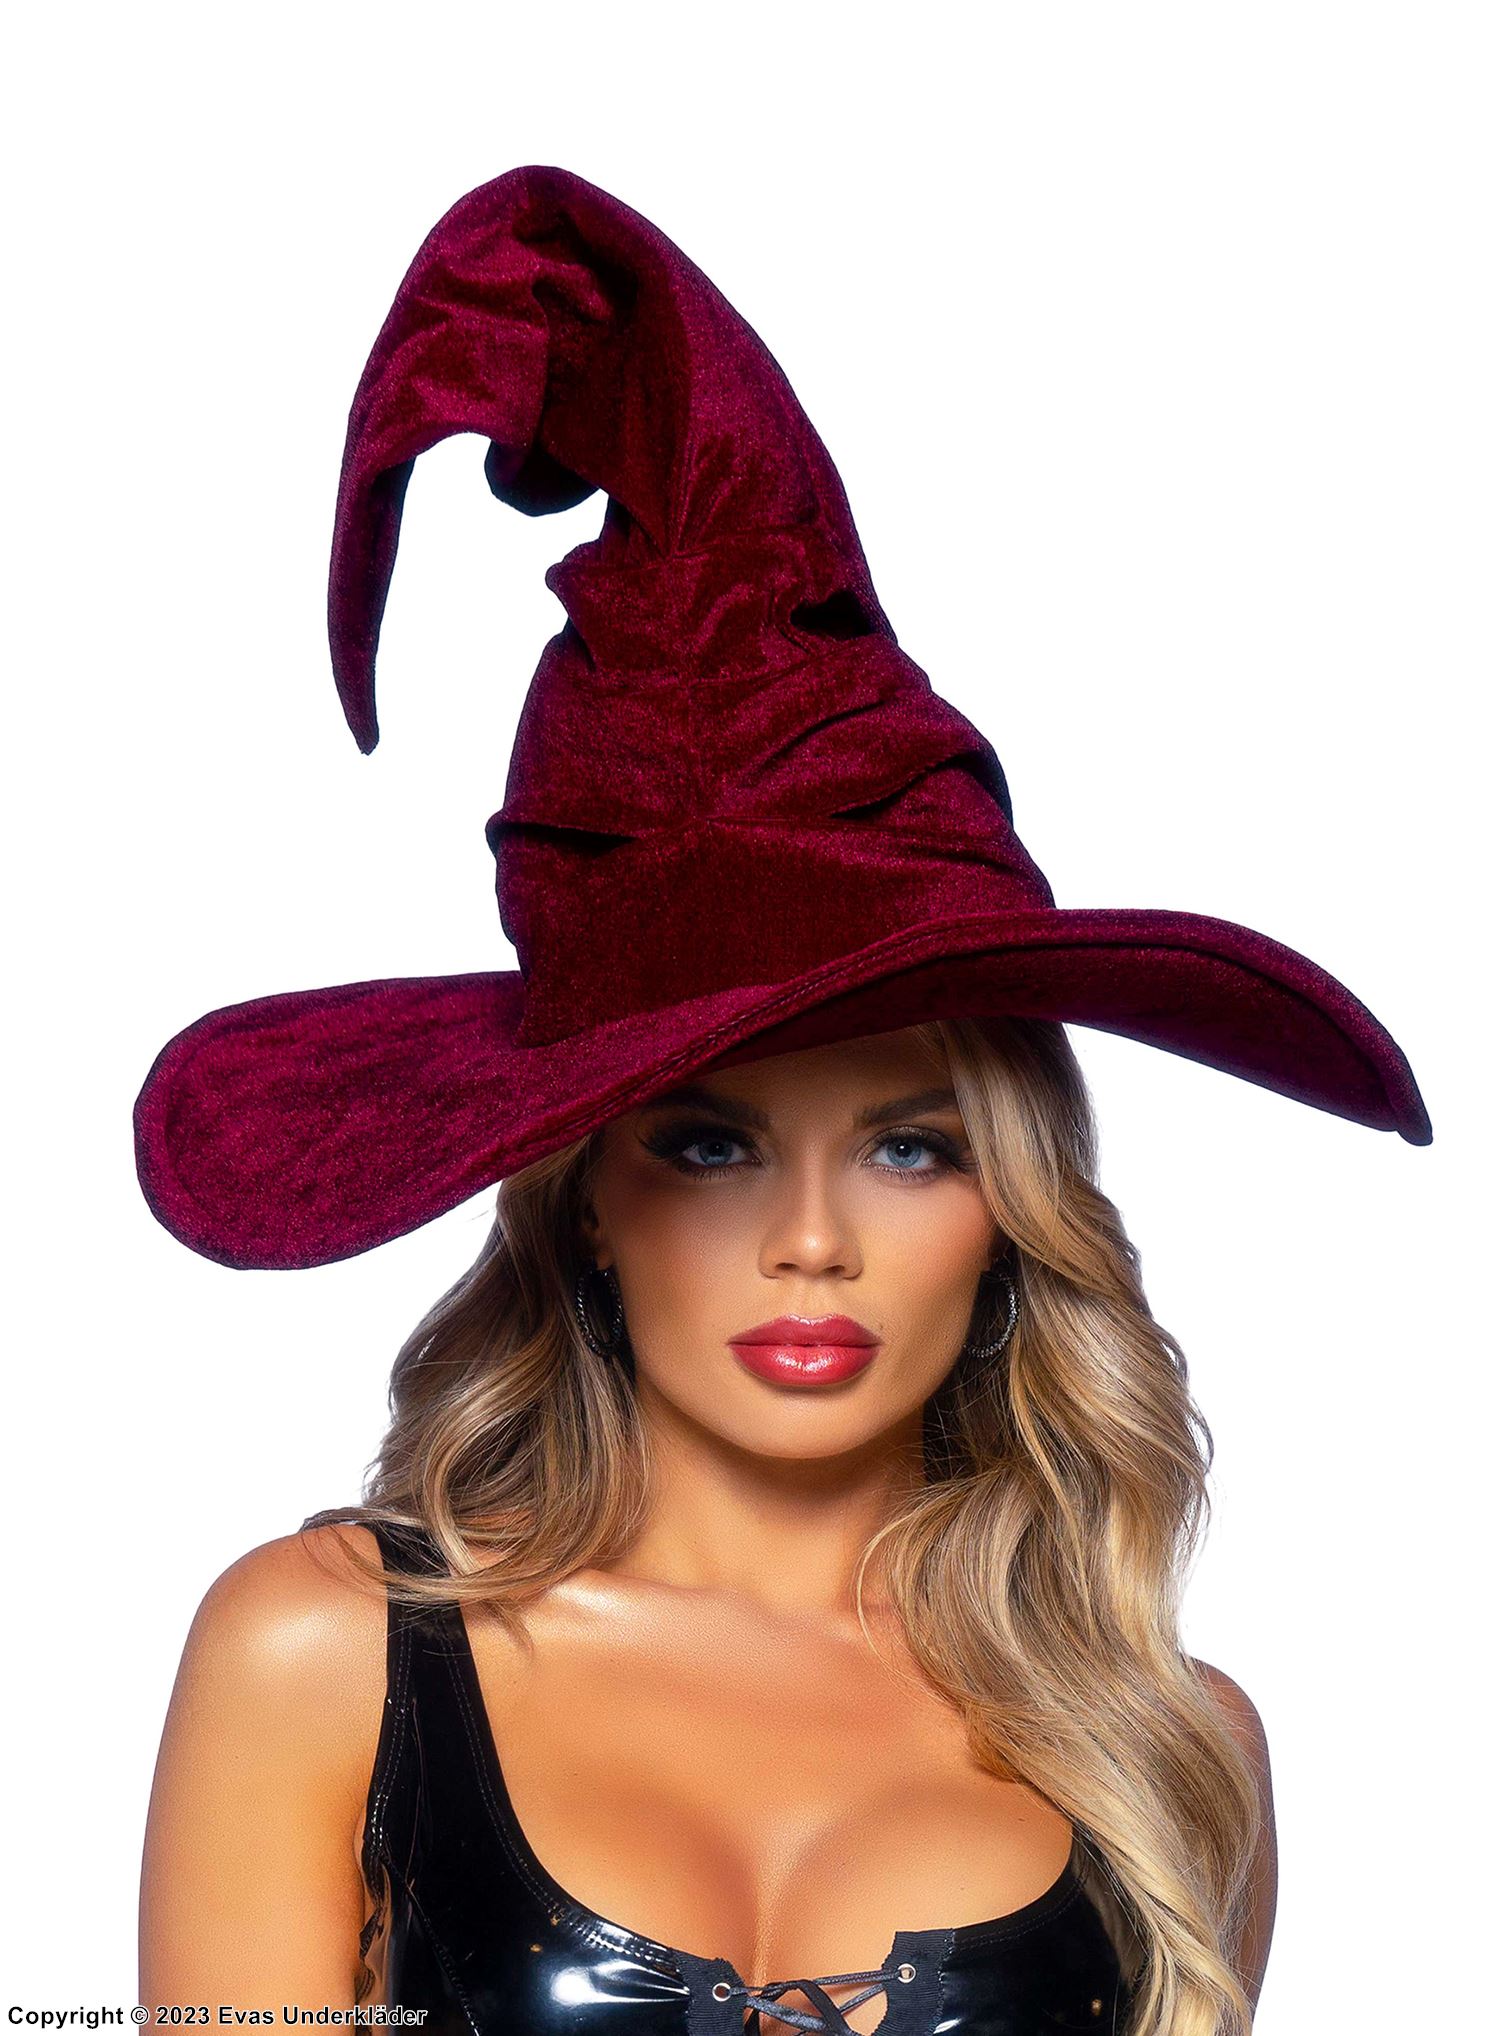 Witch, costume hat, velvet